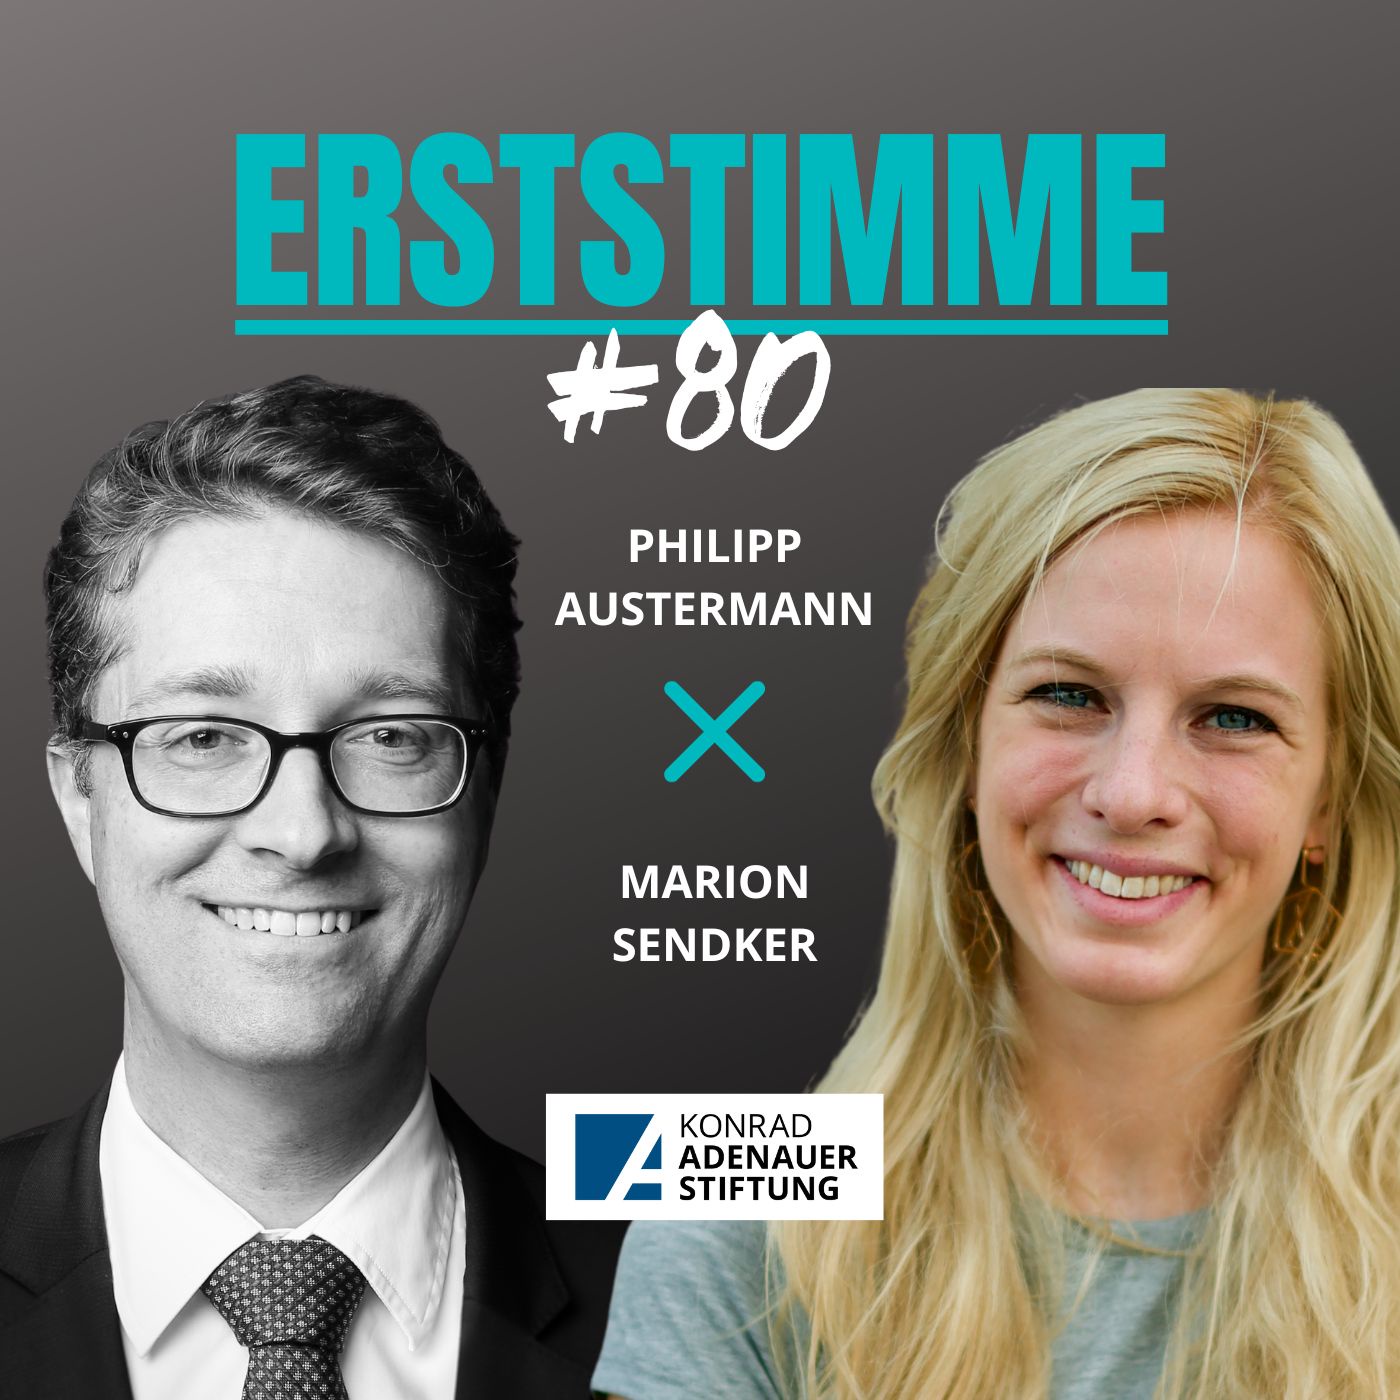 Erststimme #80: Philipp Austermann